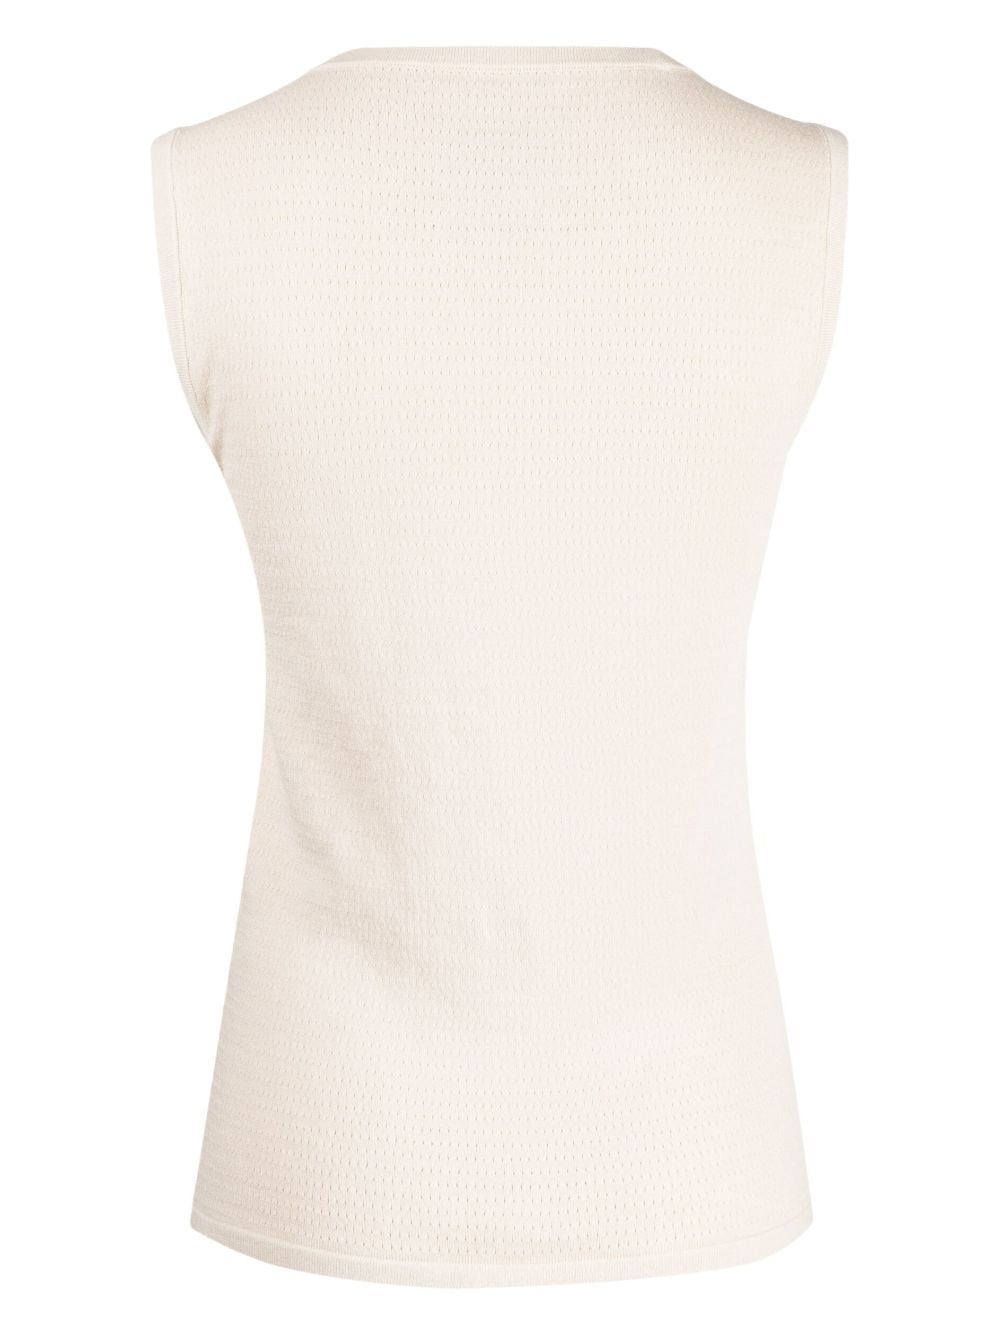 Image 2 of Lauren Manoogian sleeveless round-neck top